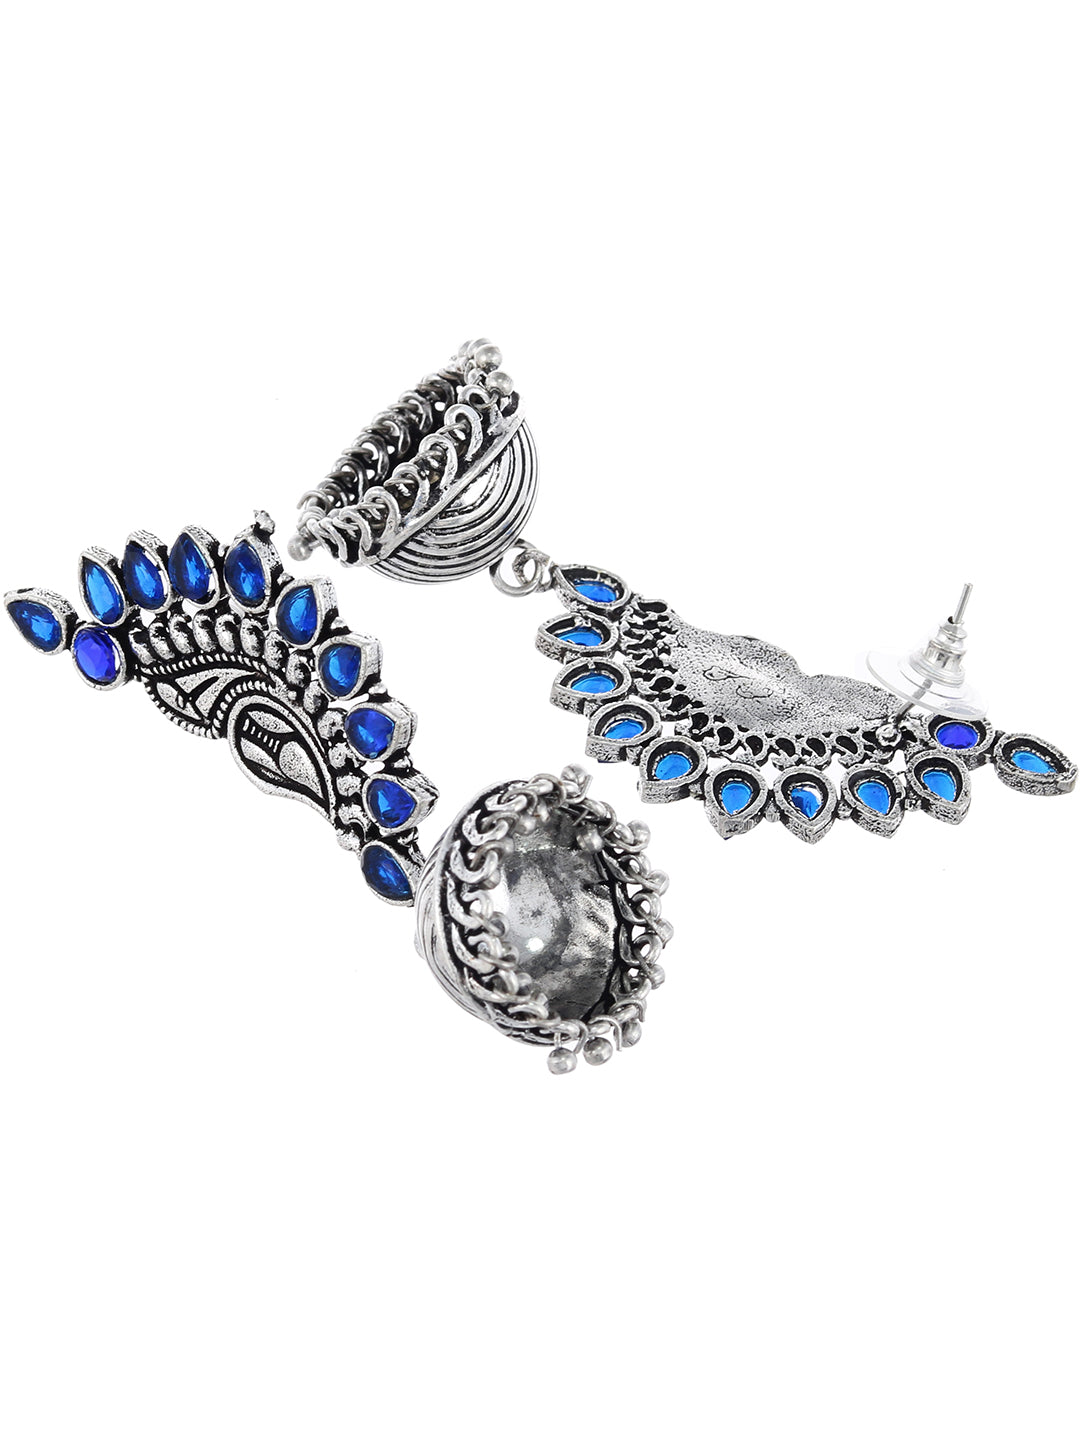 Blue stone oxidised jhumka earrings